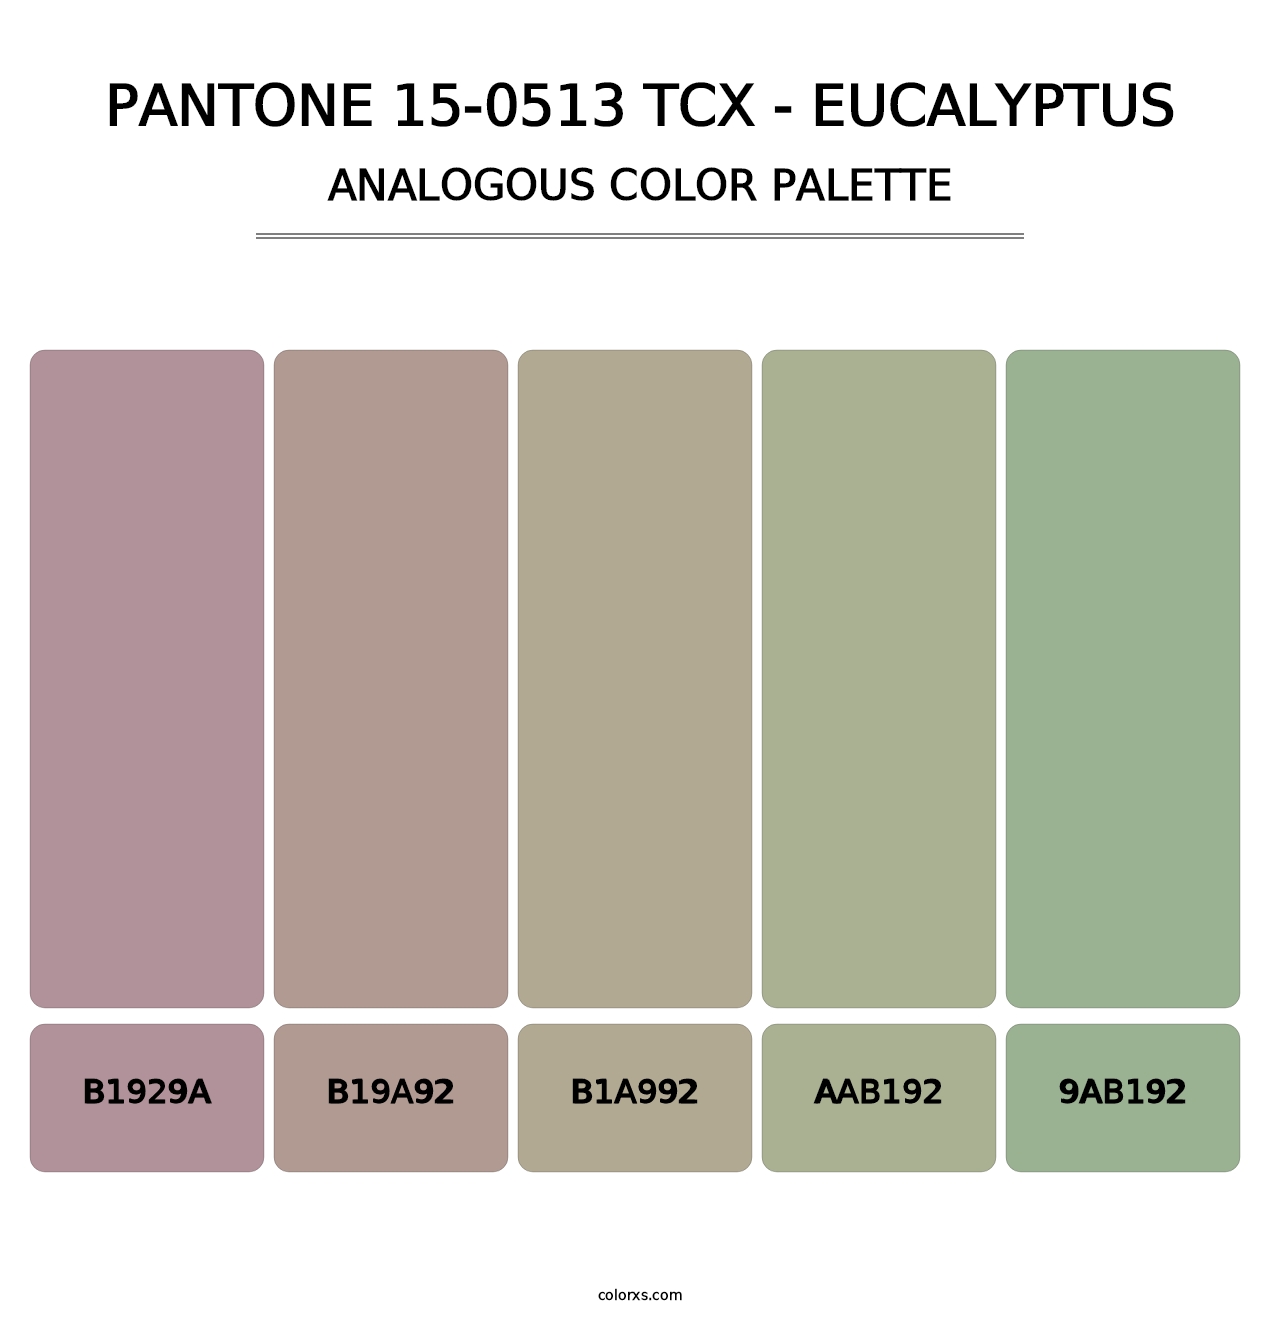 PANTONE 15-0513 TCX - Eucalyptus - Analogous Color Palette